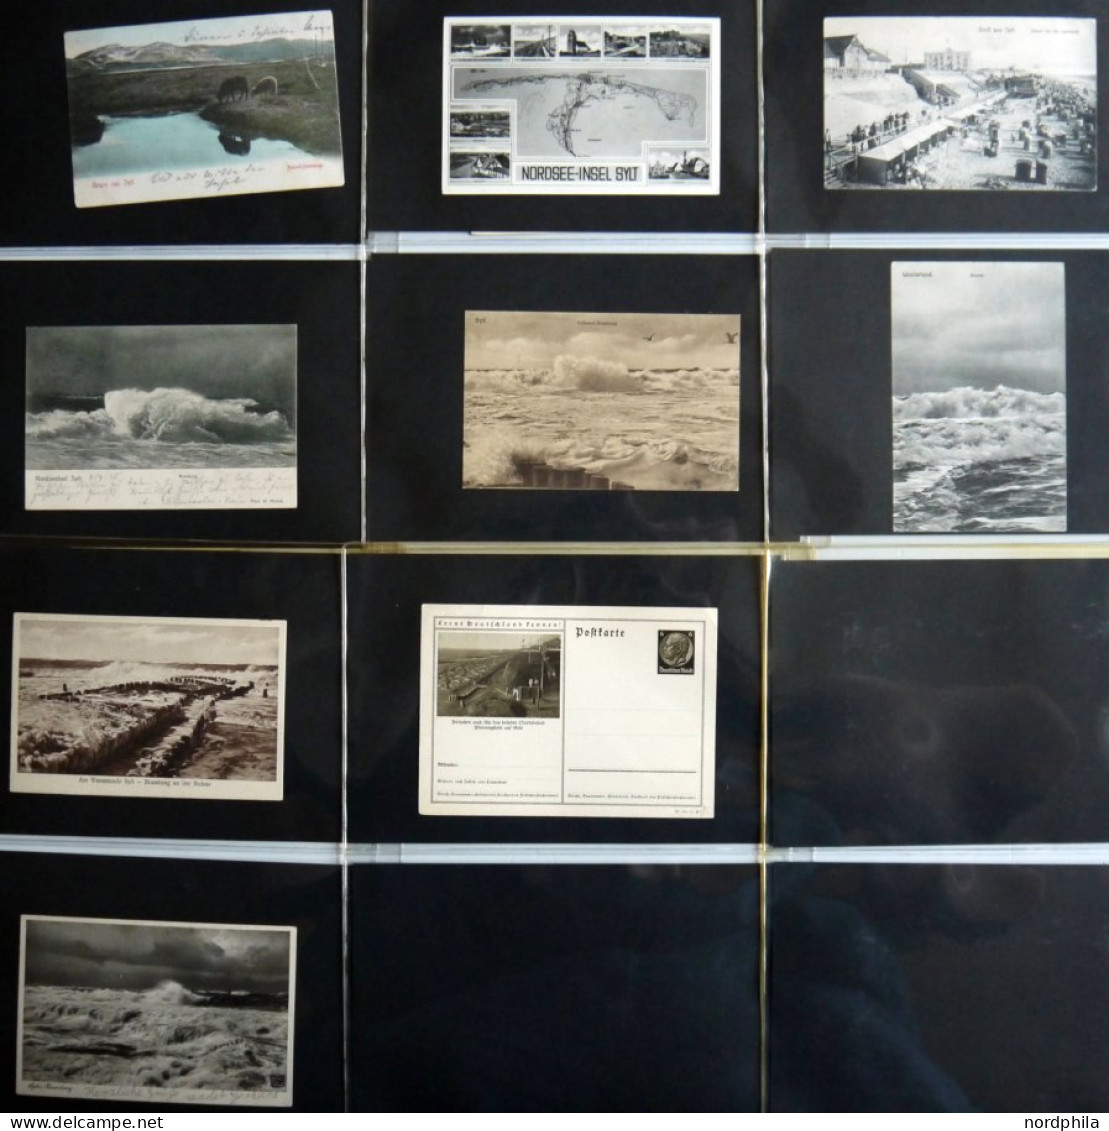 DEUTSCHLAND ETC. SYLT, Sammlung Von 67 Verschiedenen Ansichtskarten Im Briefalbum, Dabei Farbige Und Gruß Aus-Karten - Sylt